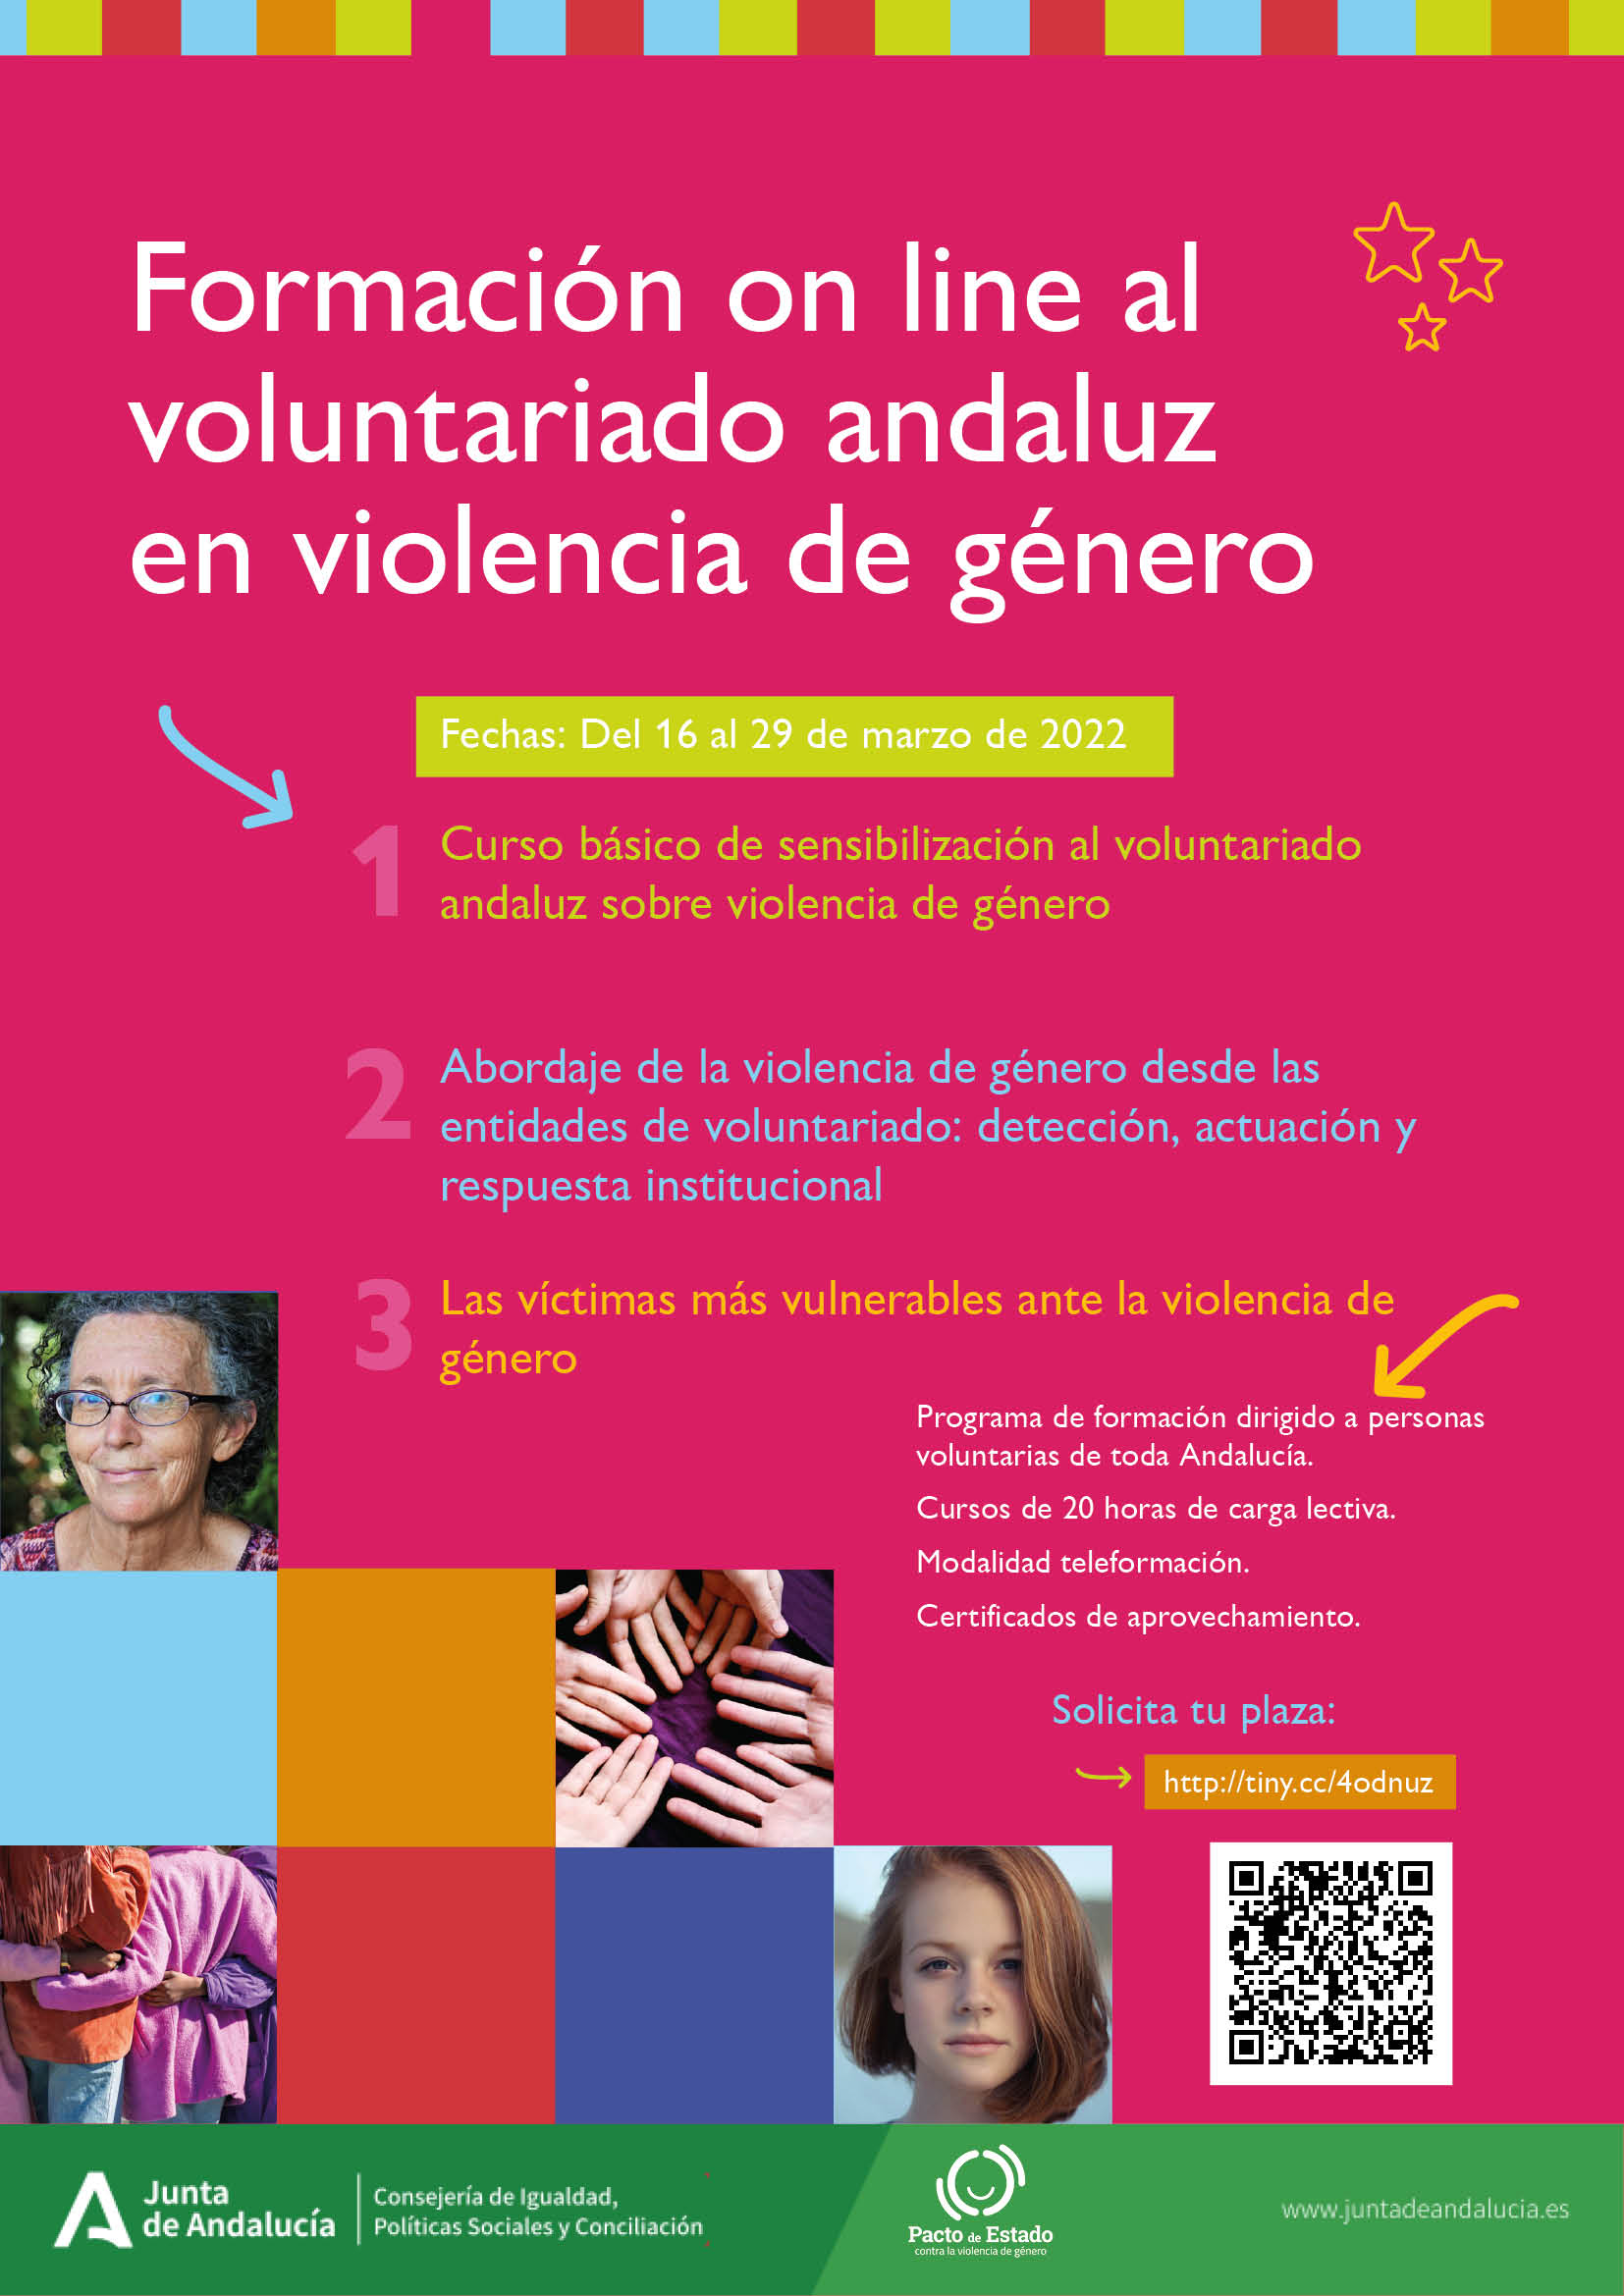 Formación on line al voluntariado andaluz en violencia de género